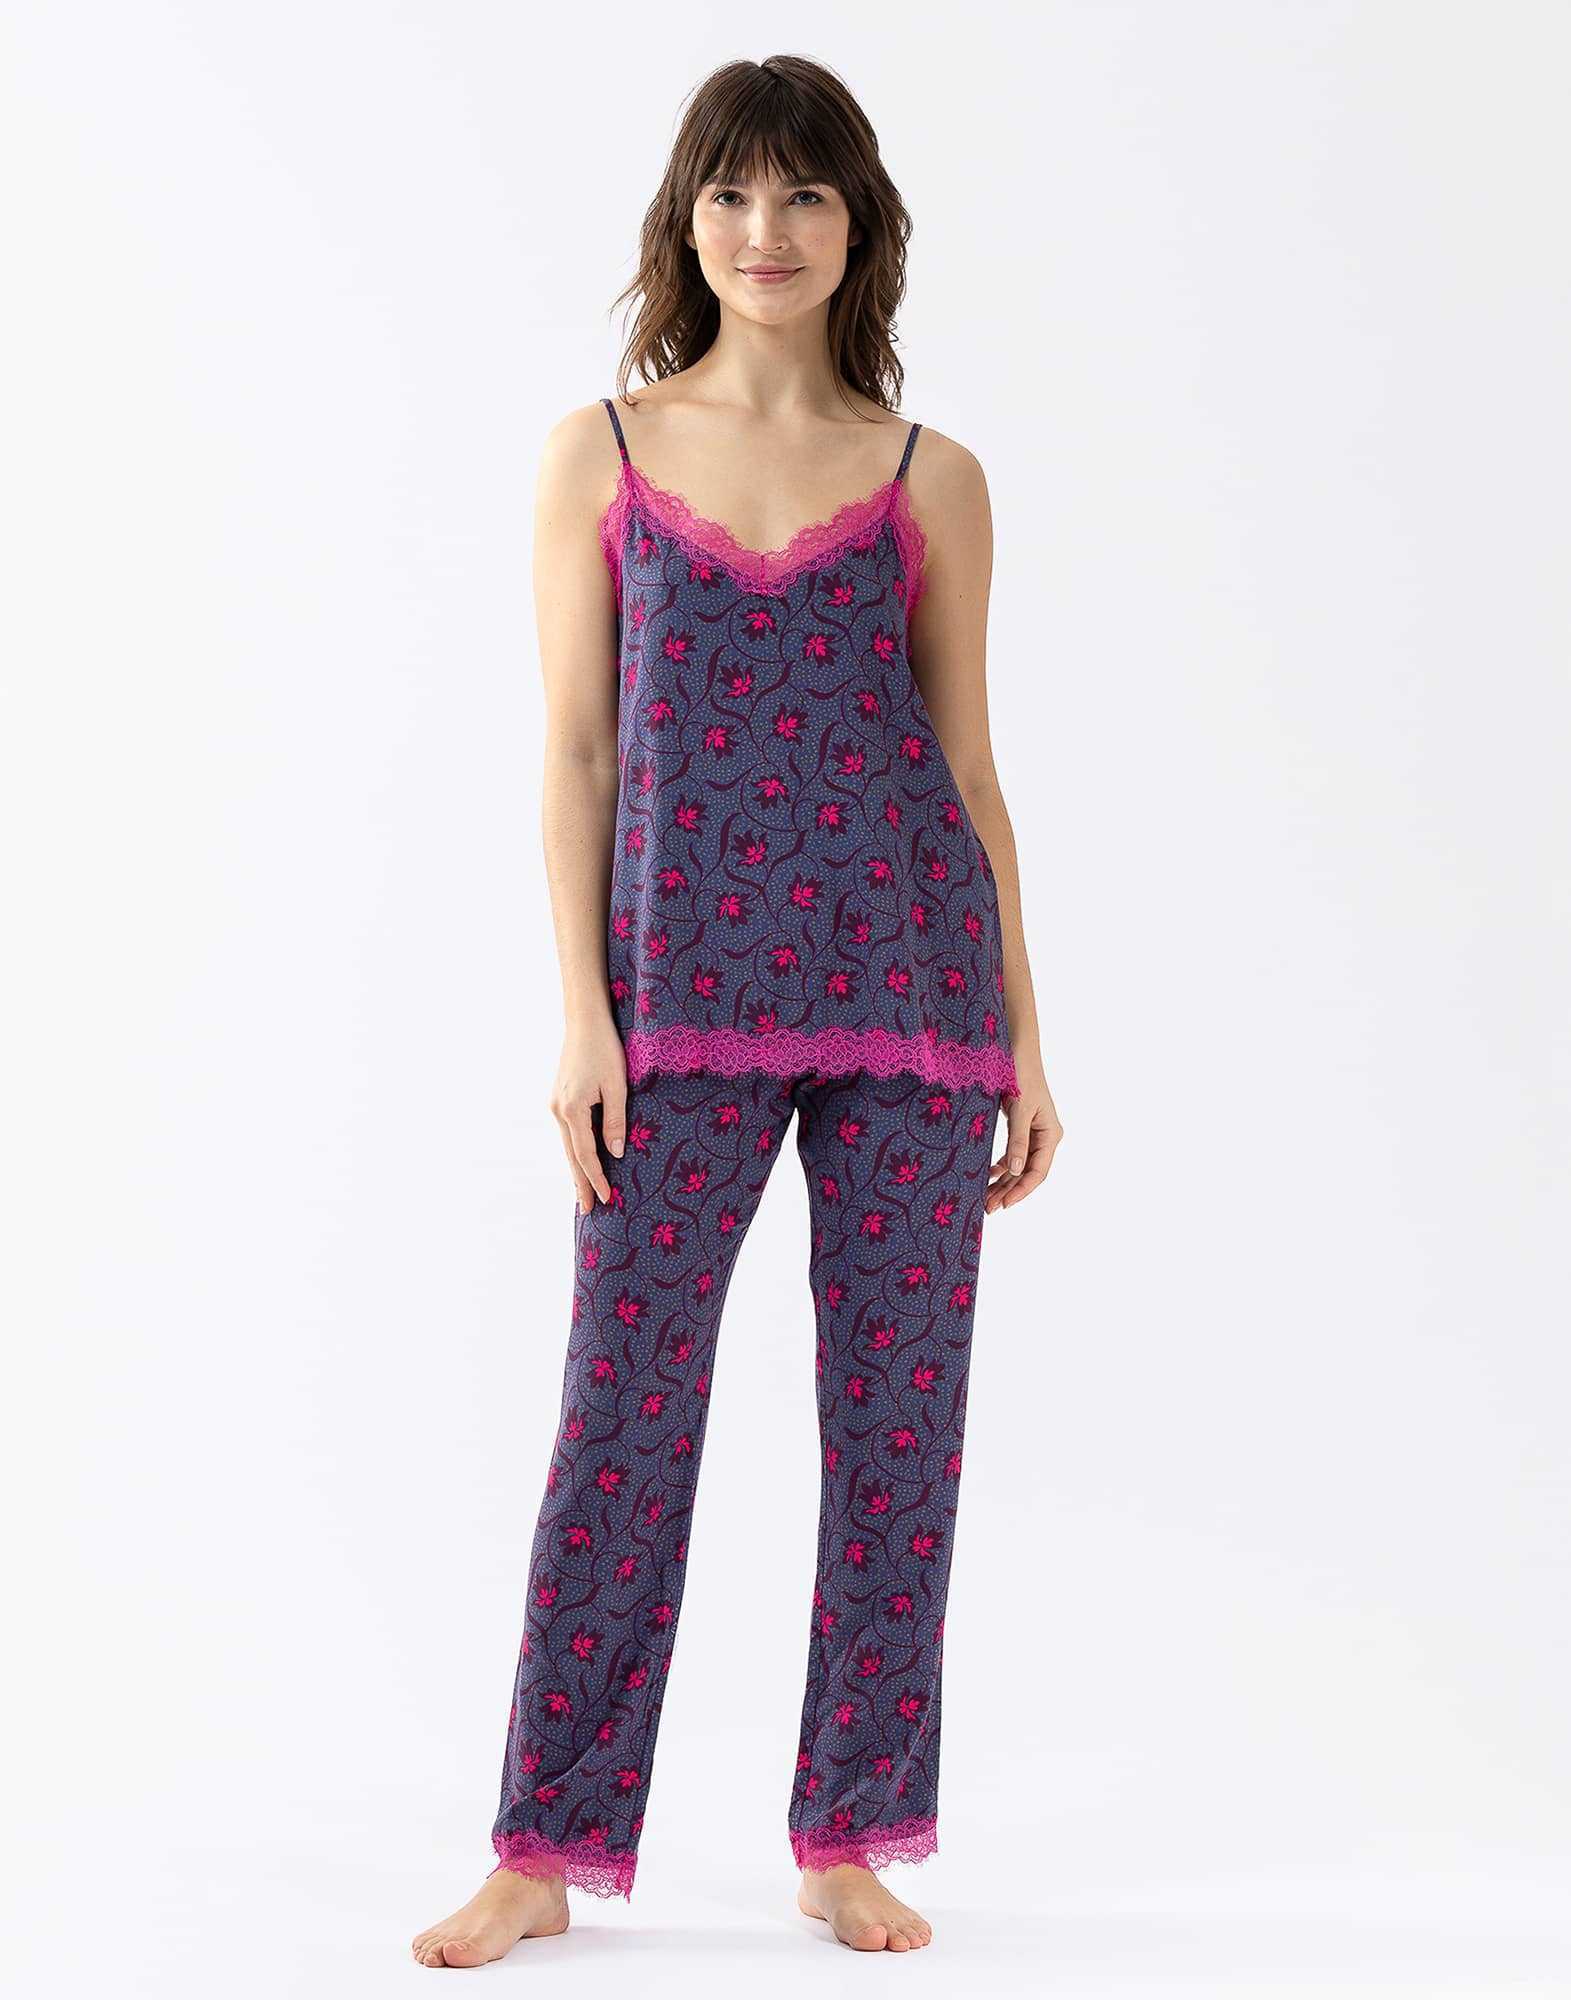 Pyjama Caraco Pantalon en viscose imprimée et  finitions dentelle ALBA 604 multico |Lingerie le Chat